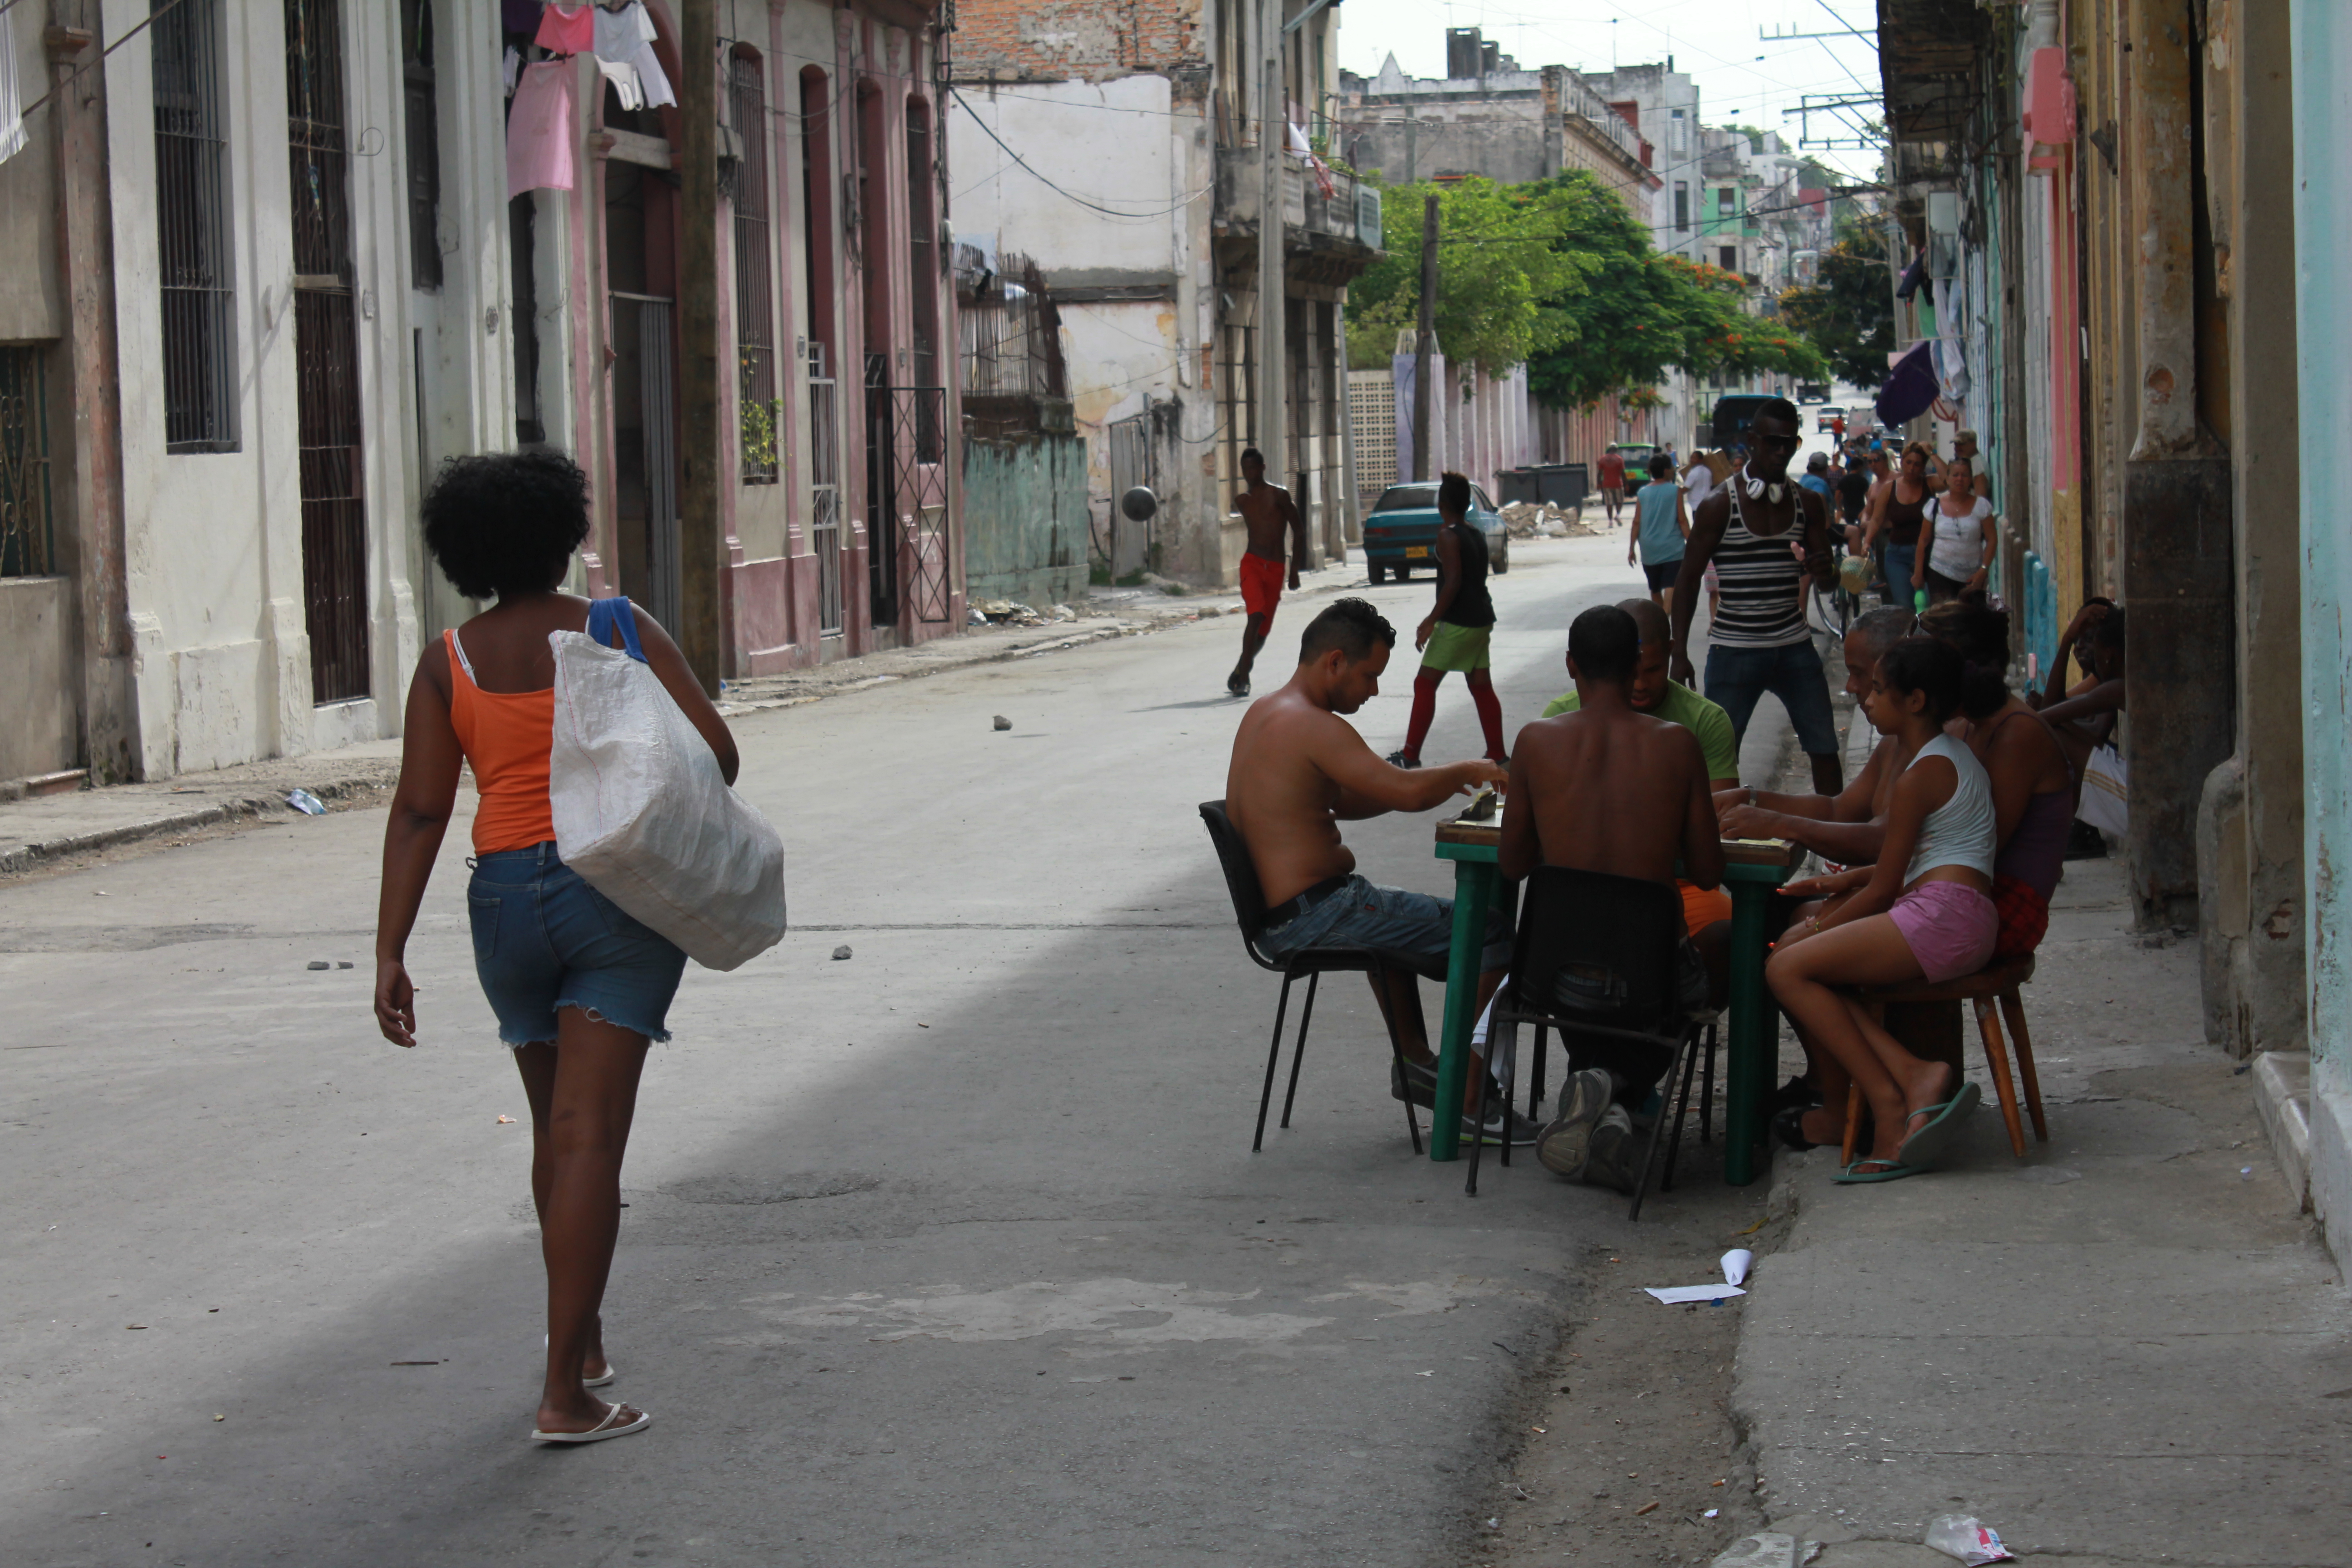 File:Street life in Havana, Cuba.JPG - Wikimedia Commons